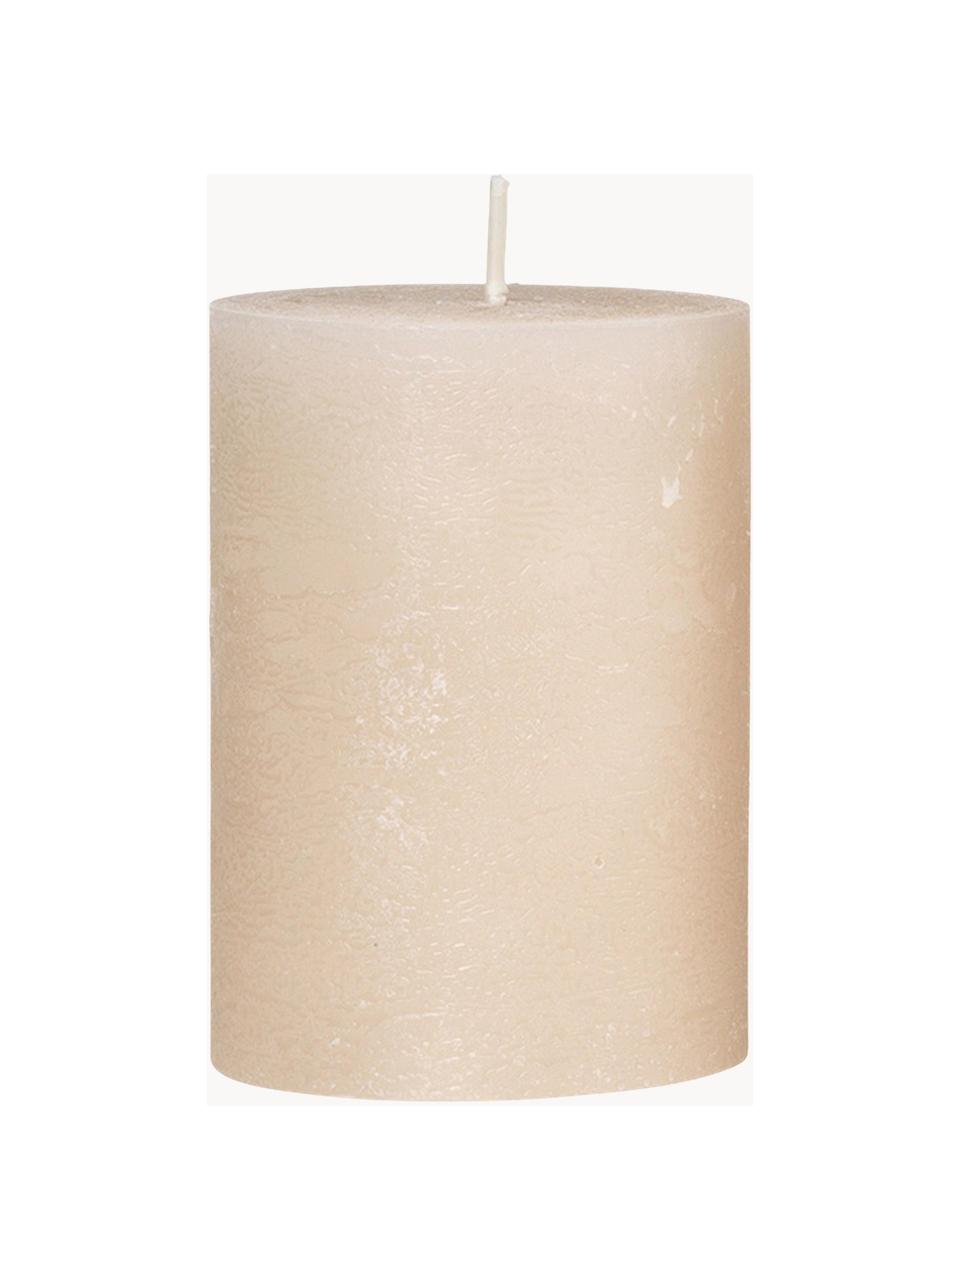 Ručně vyrobená sloupová svíčka Rustic, V 10 cm, Vosk, Krémově bílá, Ø 7 cm, V 10 cm